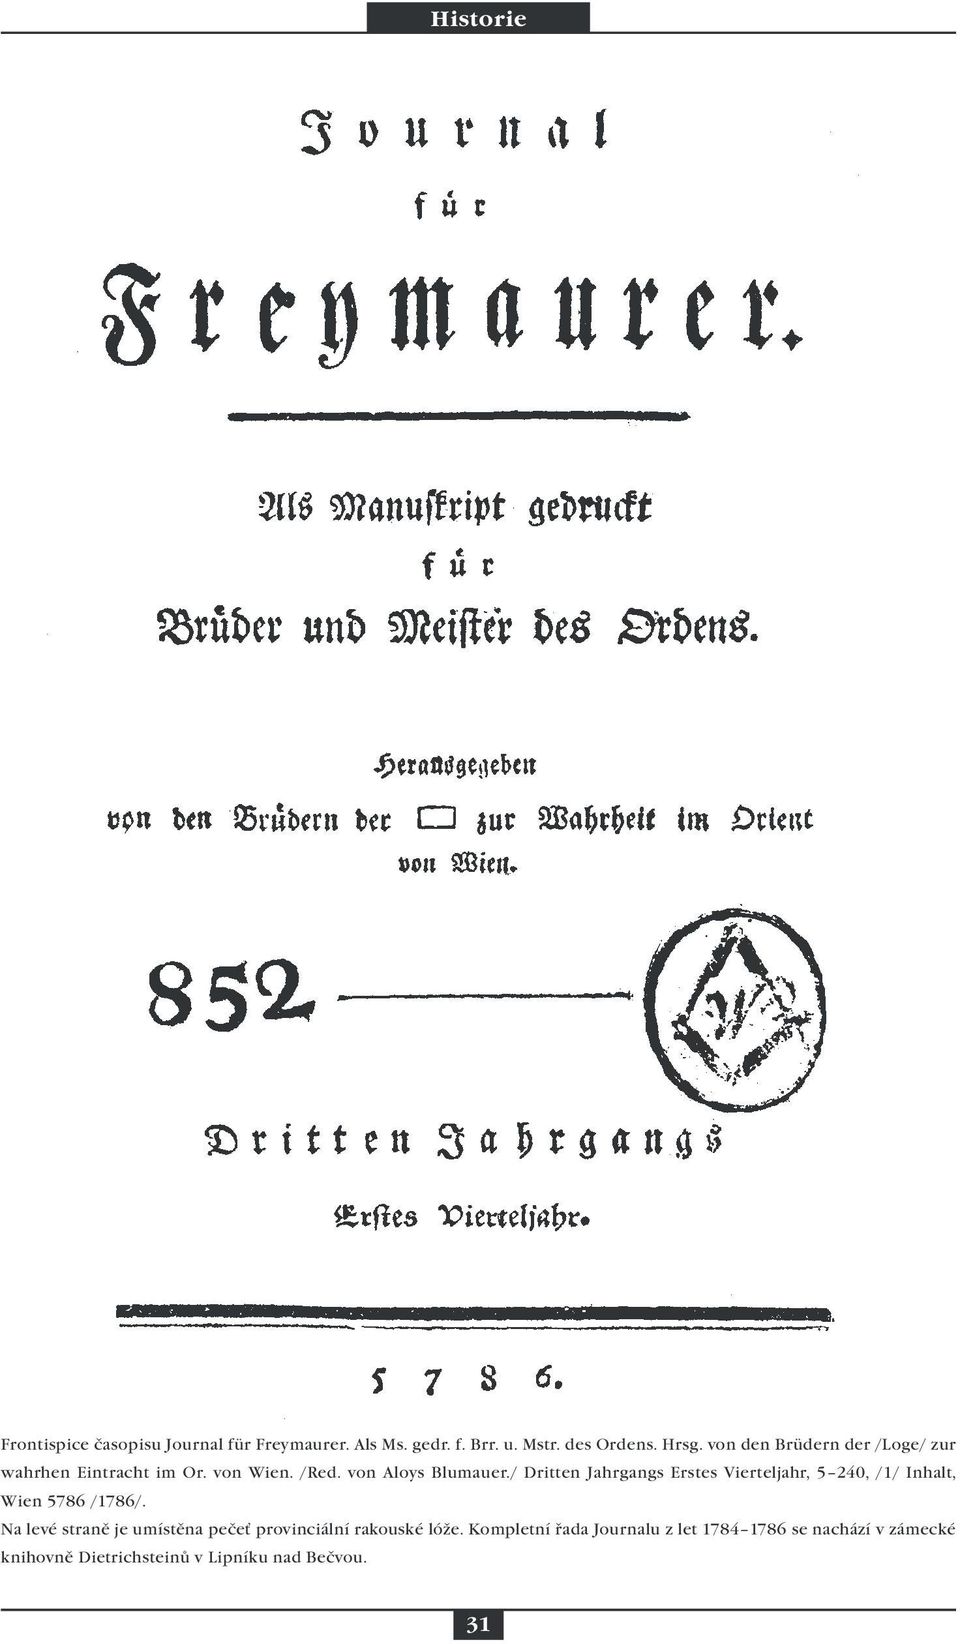 / Dritten Jahrgangs Erstes Vierteljahr, 5 240, /1/ Inhalt, Wien 5786 /1786/.